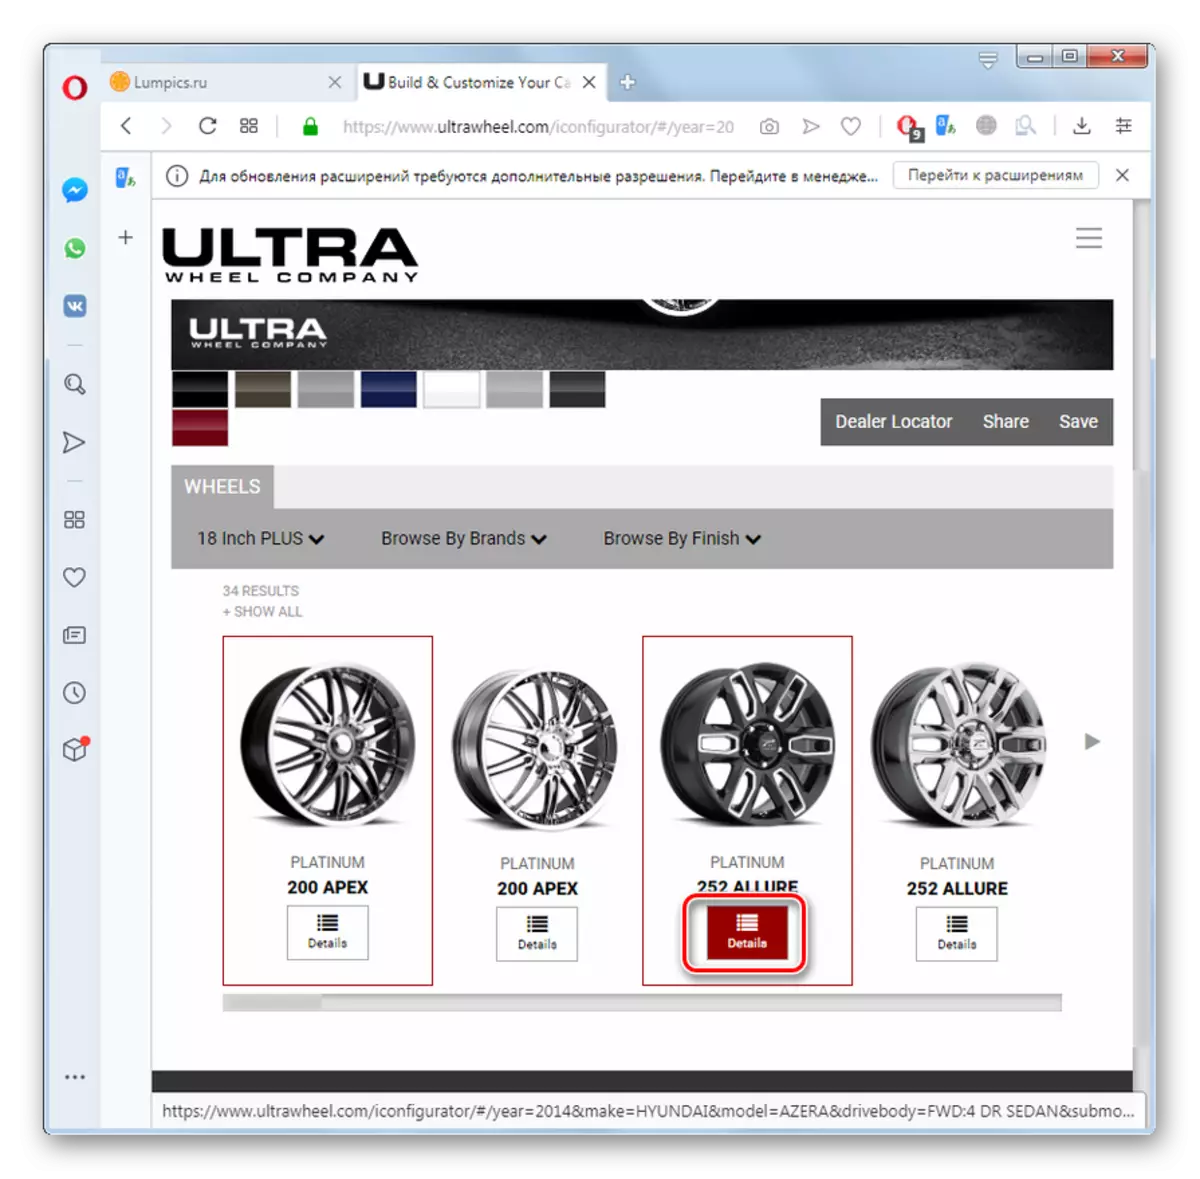 Đi để xem thông tin về bộ bánh xe trên trang web Ultrawheel trong trình duyệt Opera